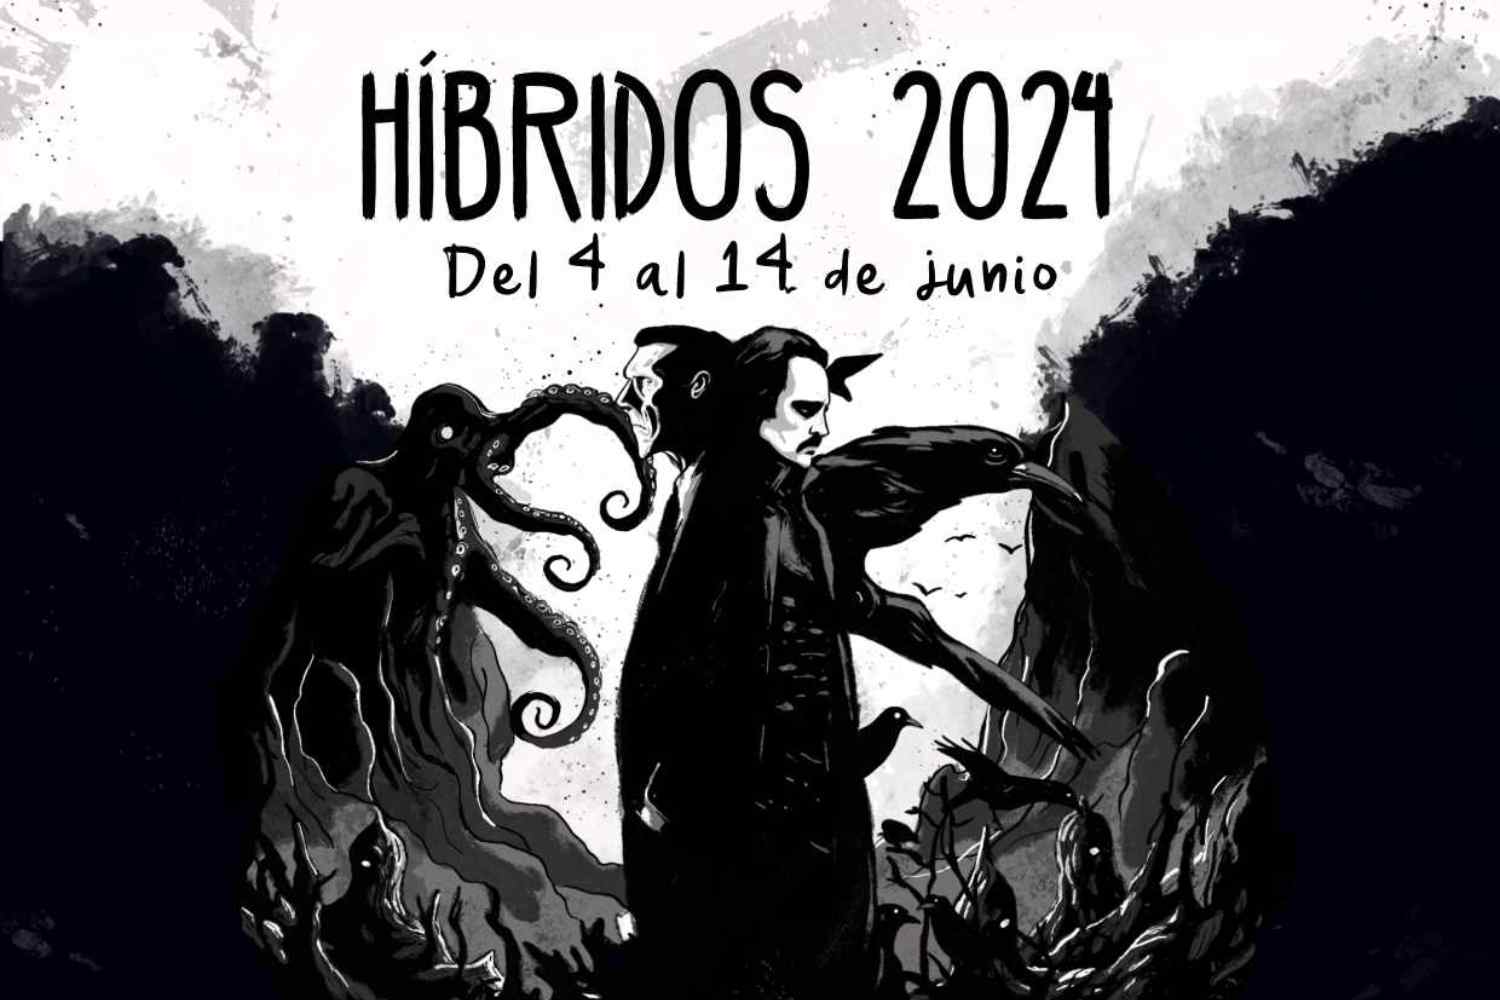 Cine y literatura de terror y poesía, protagonistas del Festival Híbridos 2024 de León